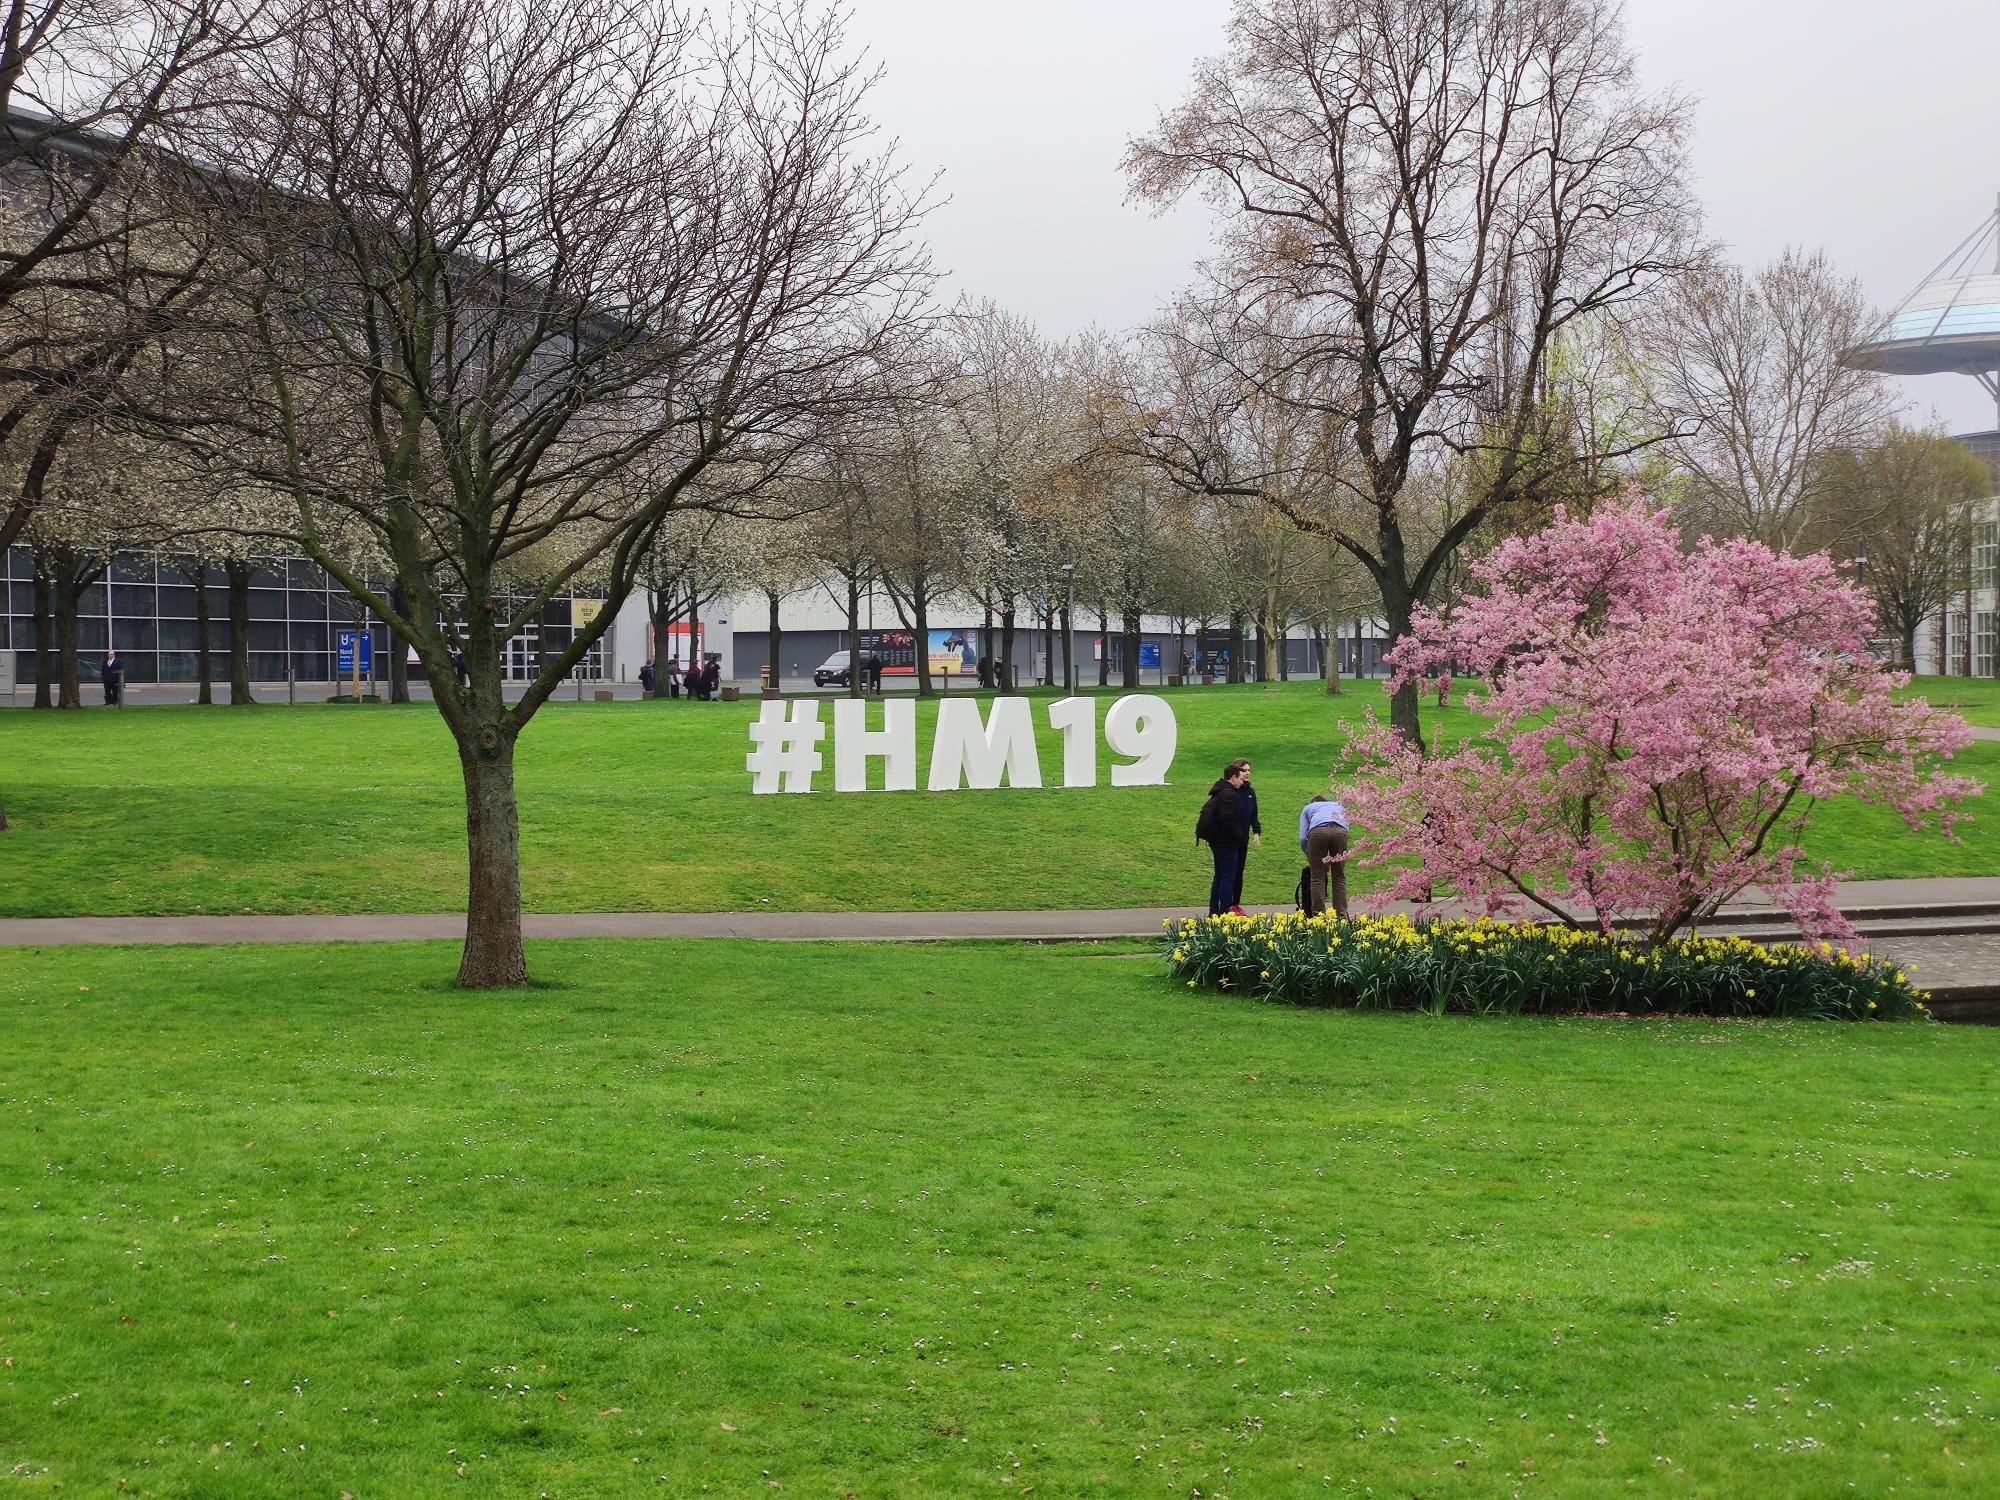 Dieses Bild zeigt einen physischen #HM19-Hashtag auf der Wiese vor Halle 2.